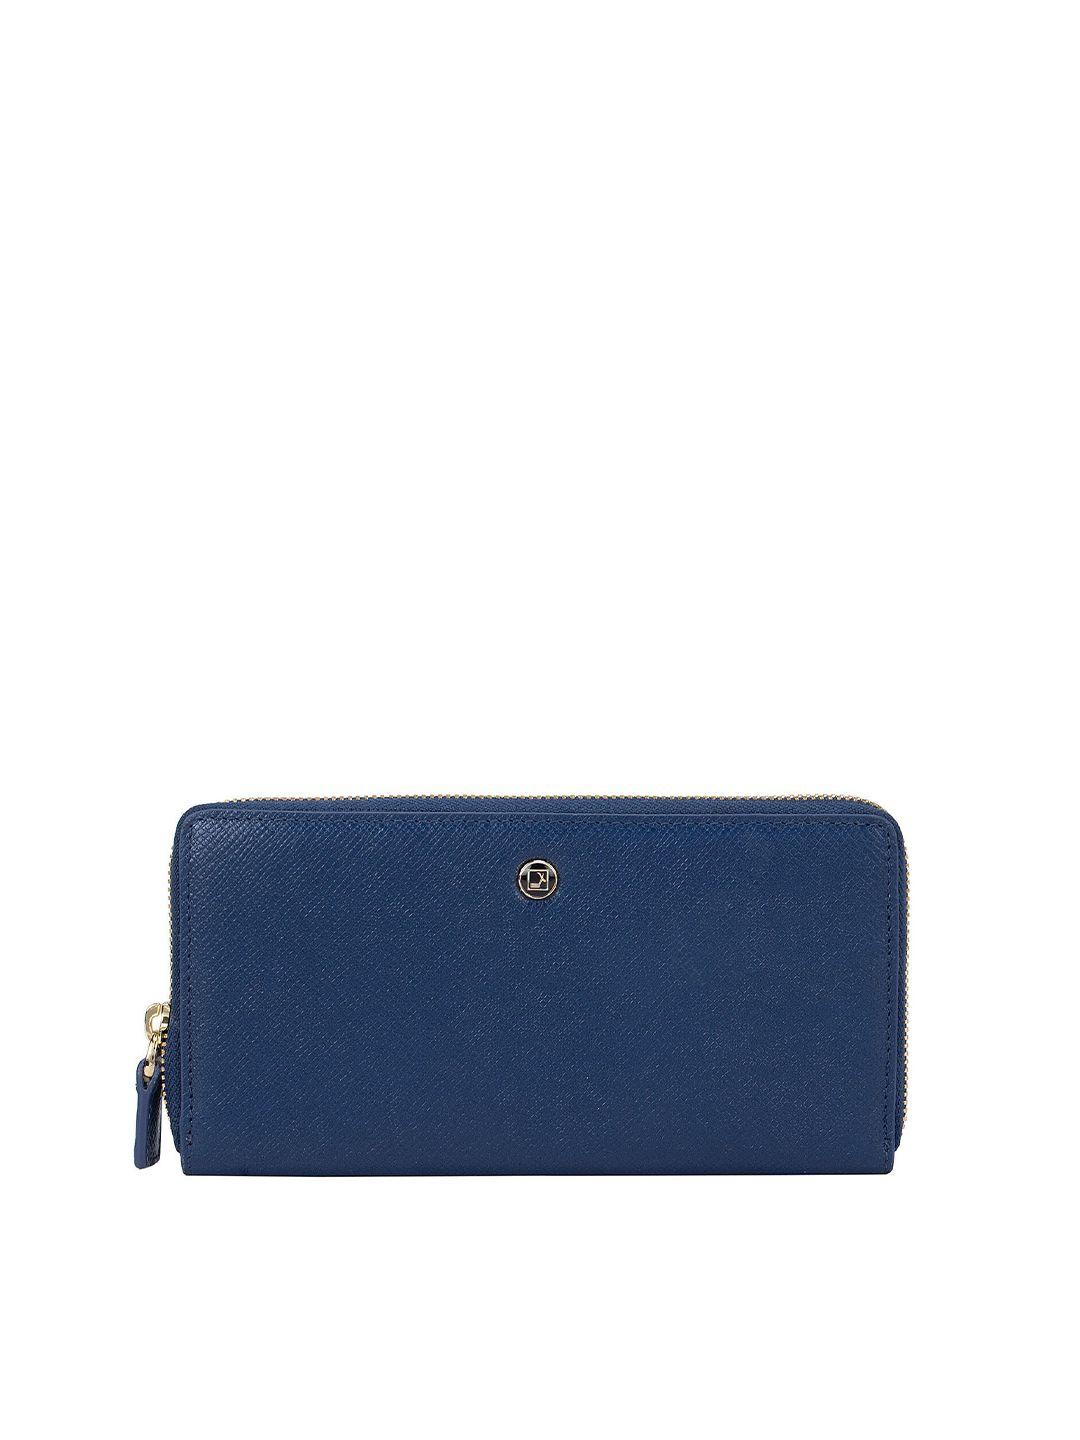 da milano women blue textured leather zip around wallet